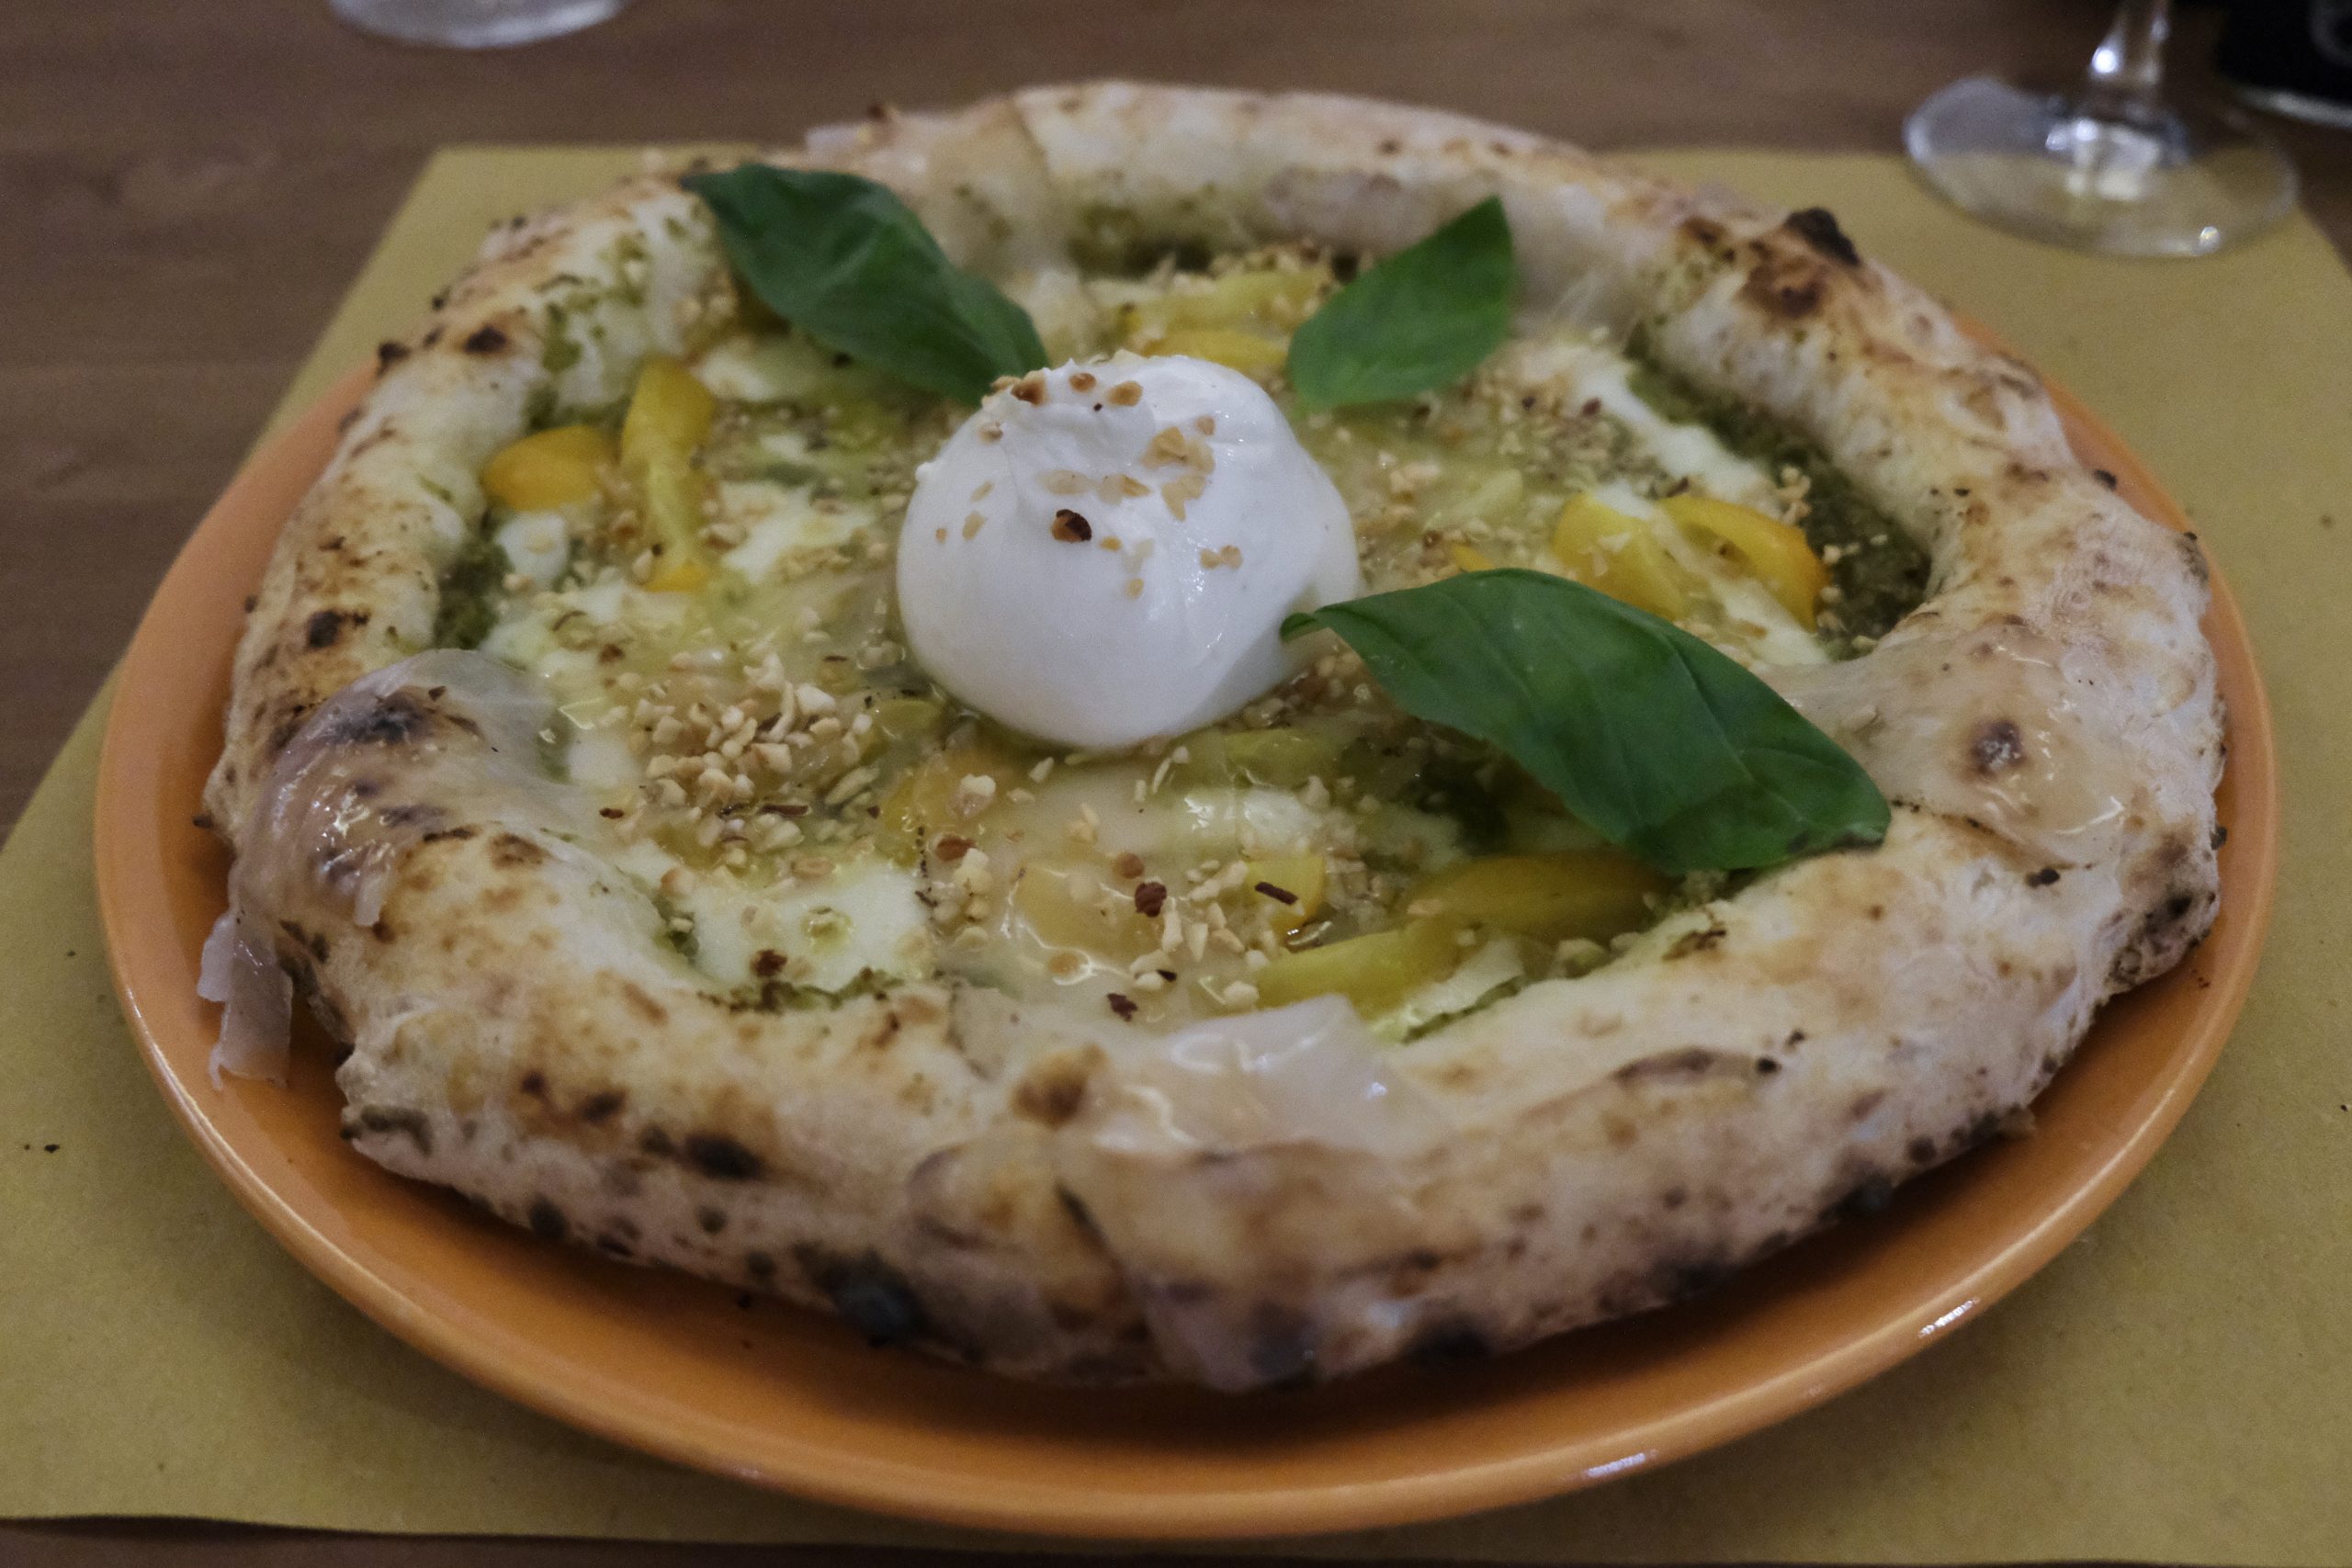 Gina con fior di latte, crema di asparagi, lardo di Colonnata, pomodori secchi, tarallo napoletano sbriciolato (Pizzeria Verace, Perugia)